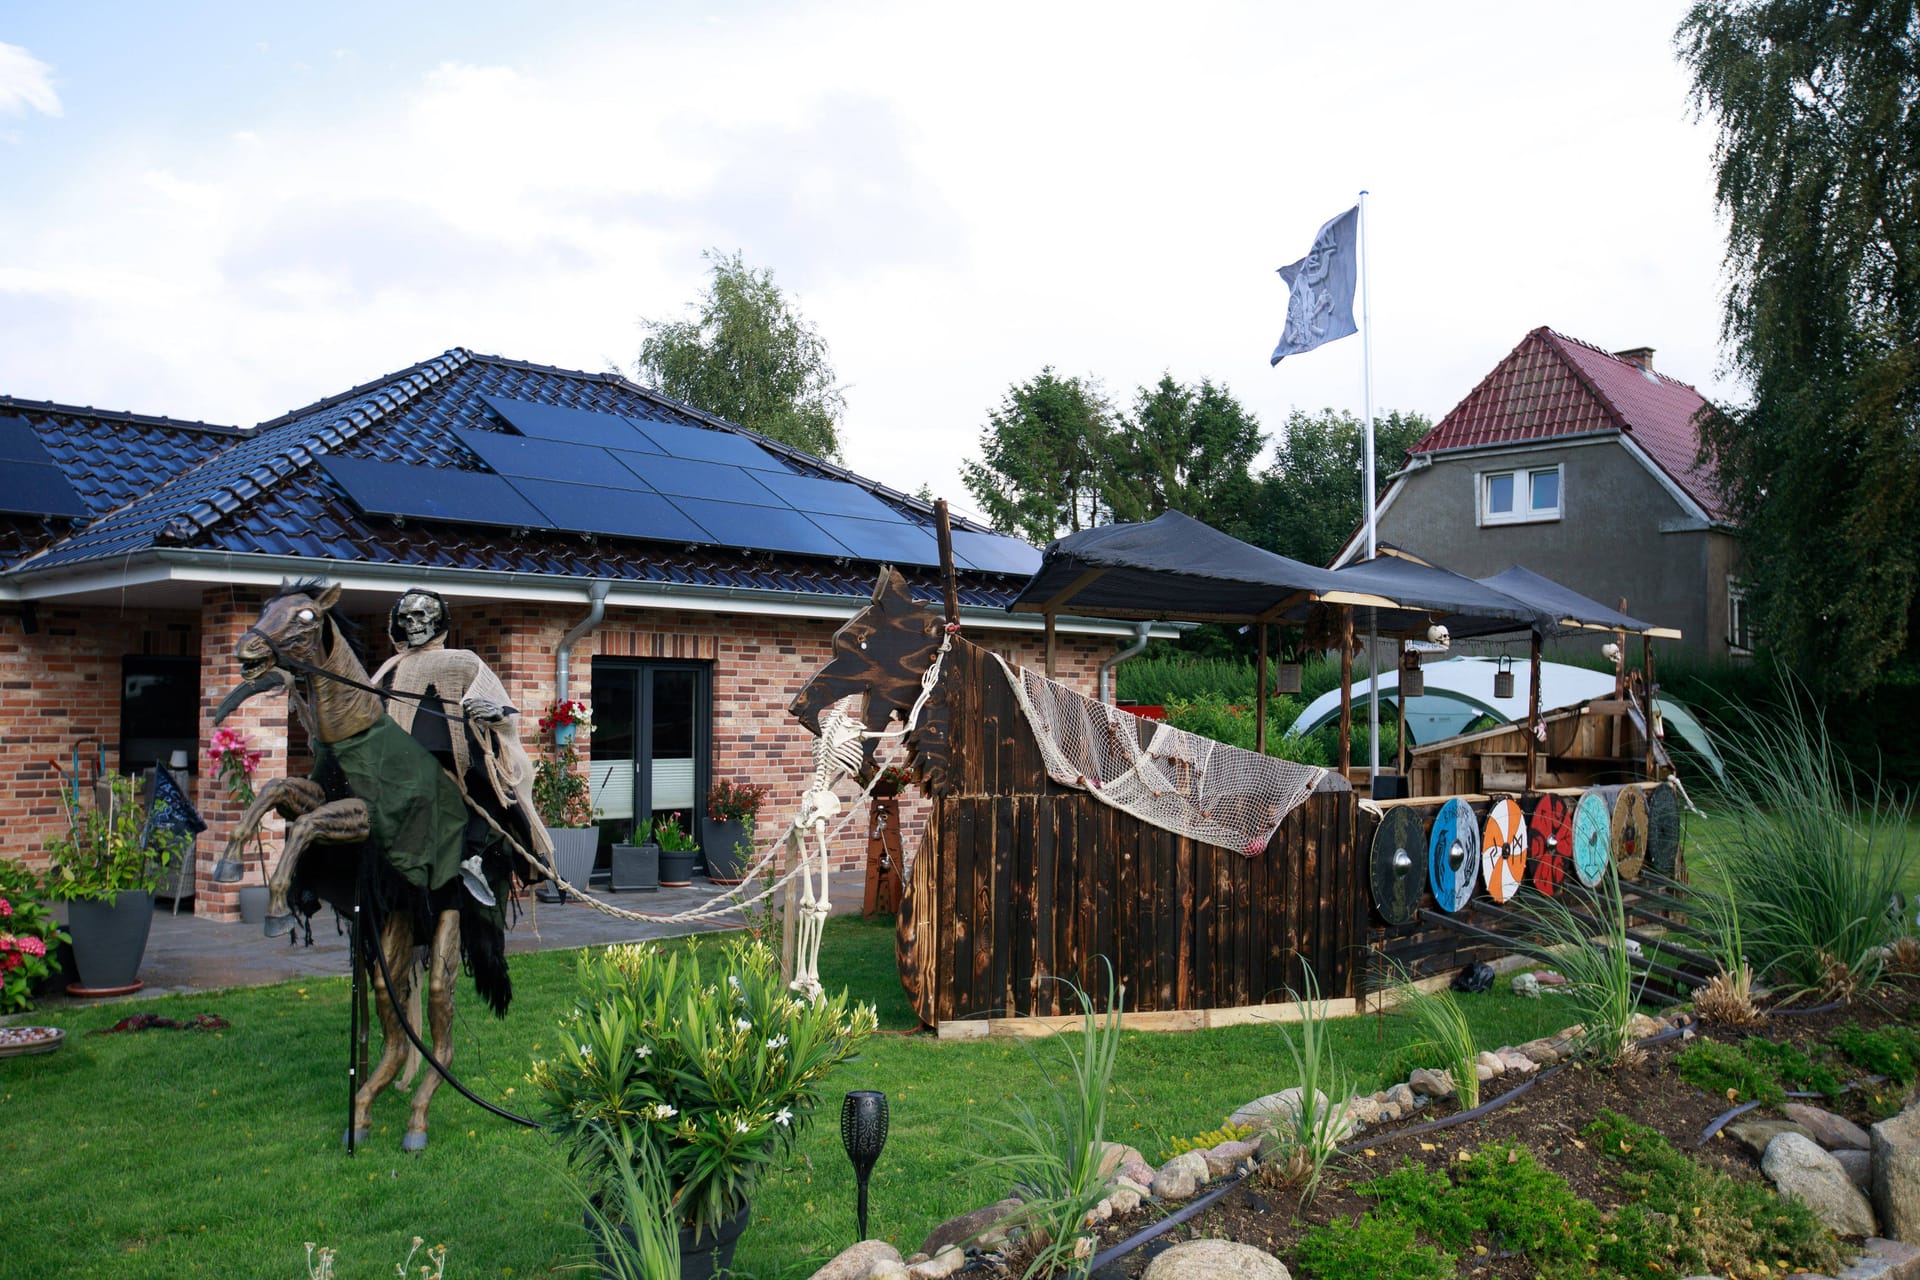 Auch die Anwohner im schleswig-holsteinischen Wacken freuten sich auf die Festivalbesucher und bereiteten traditionell ihre Gärten vor.